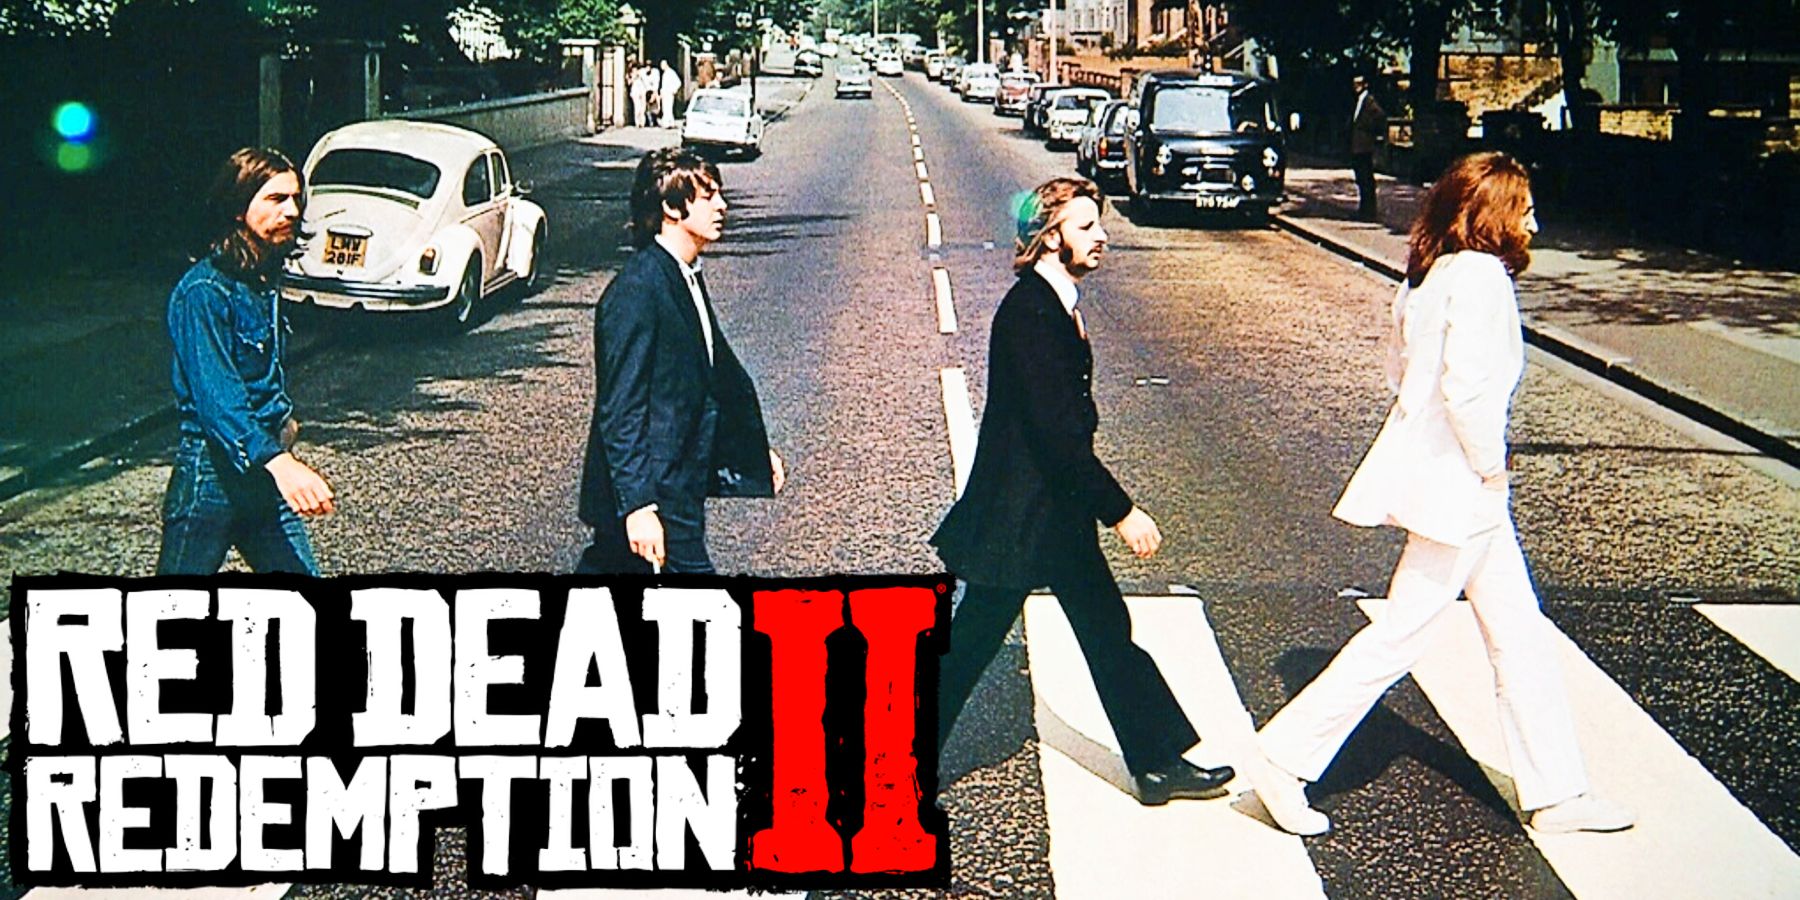 Il fan di Red Dead Redemption 2 riesce a rifare la copertina dell’iconico album dei Beatles nel gioco